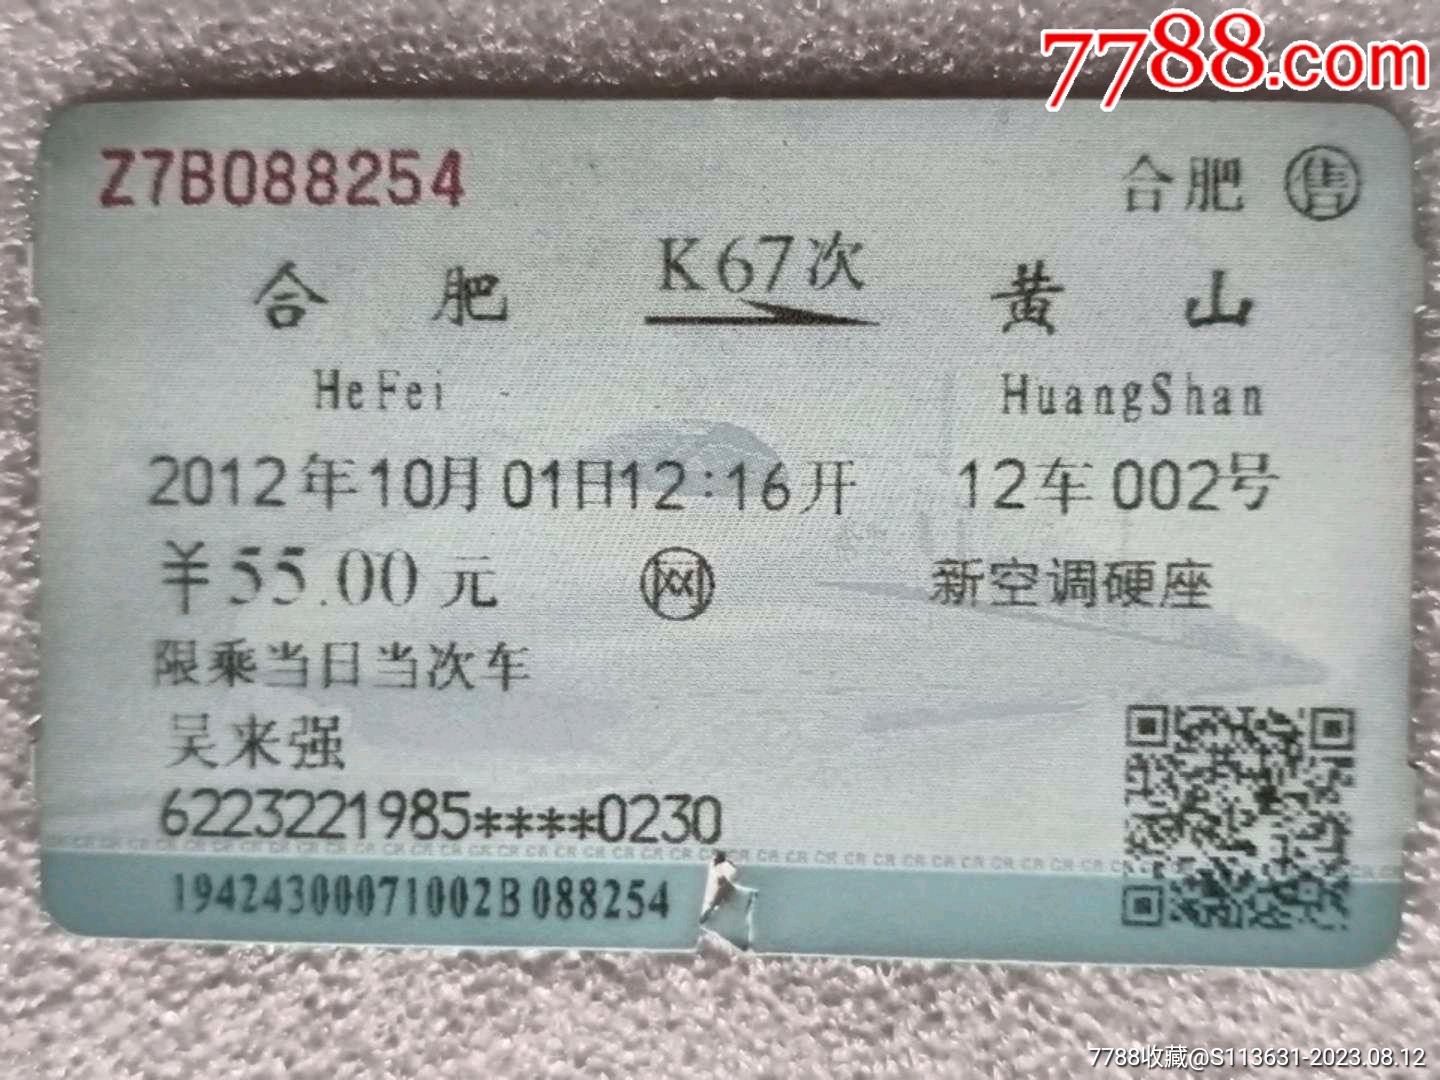 上海D5478次至合肥火车票-价格:5元-se97905476-火车票-零售-7788收藏__收藏热线